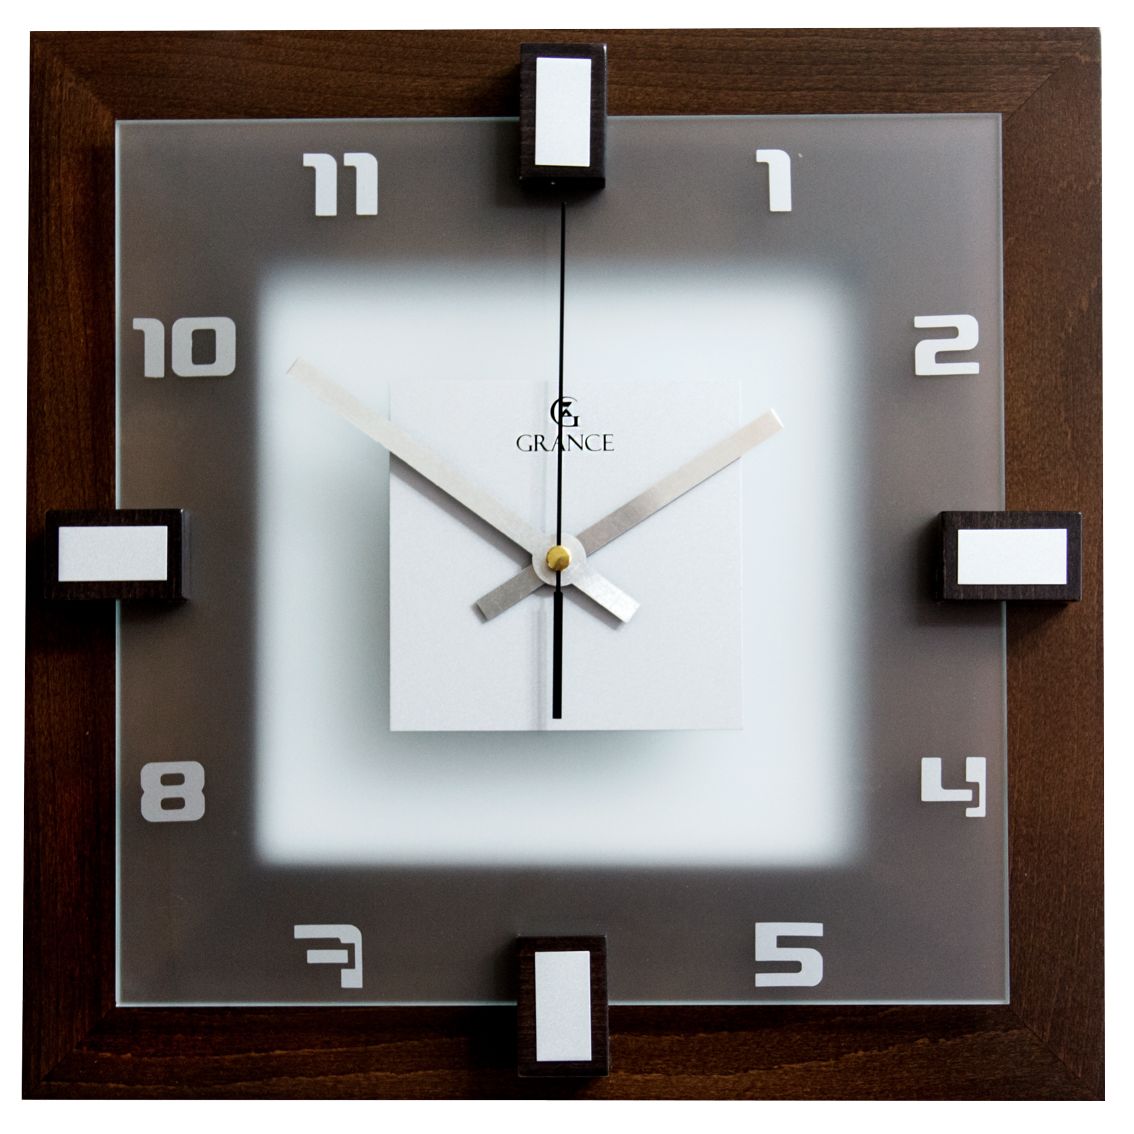 Модели часов настенных. Часы Grance "i-01" венге. Часы настенные Grance, цвет венге 711213. Часы настенные Reiter 45t. Часы настенные Granat.